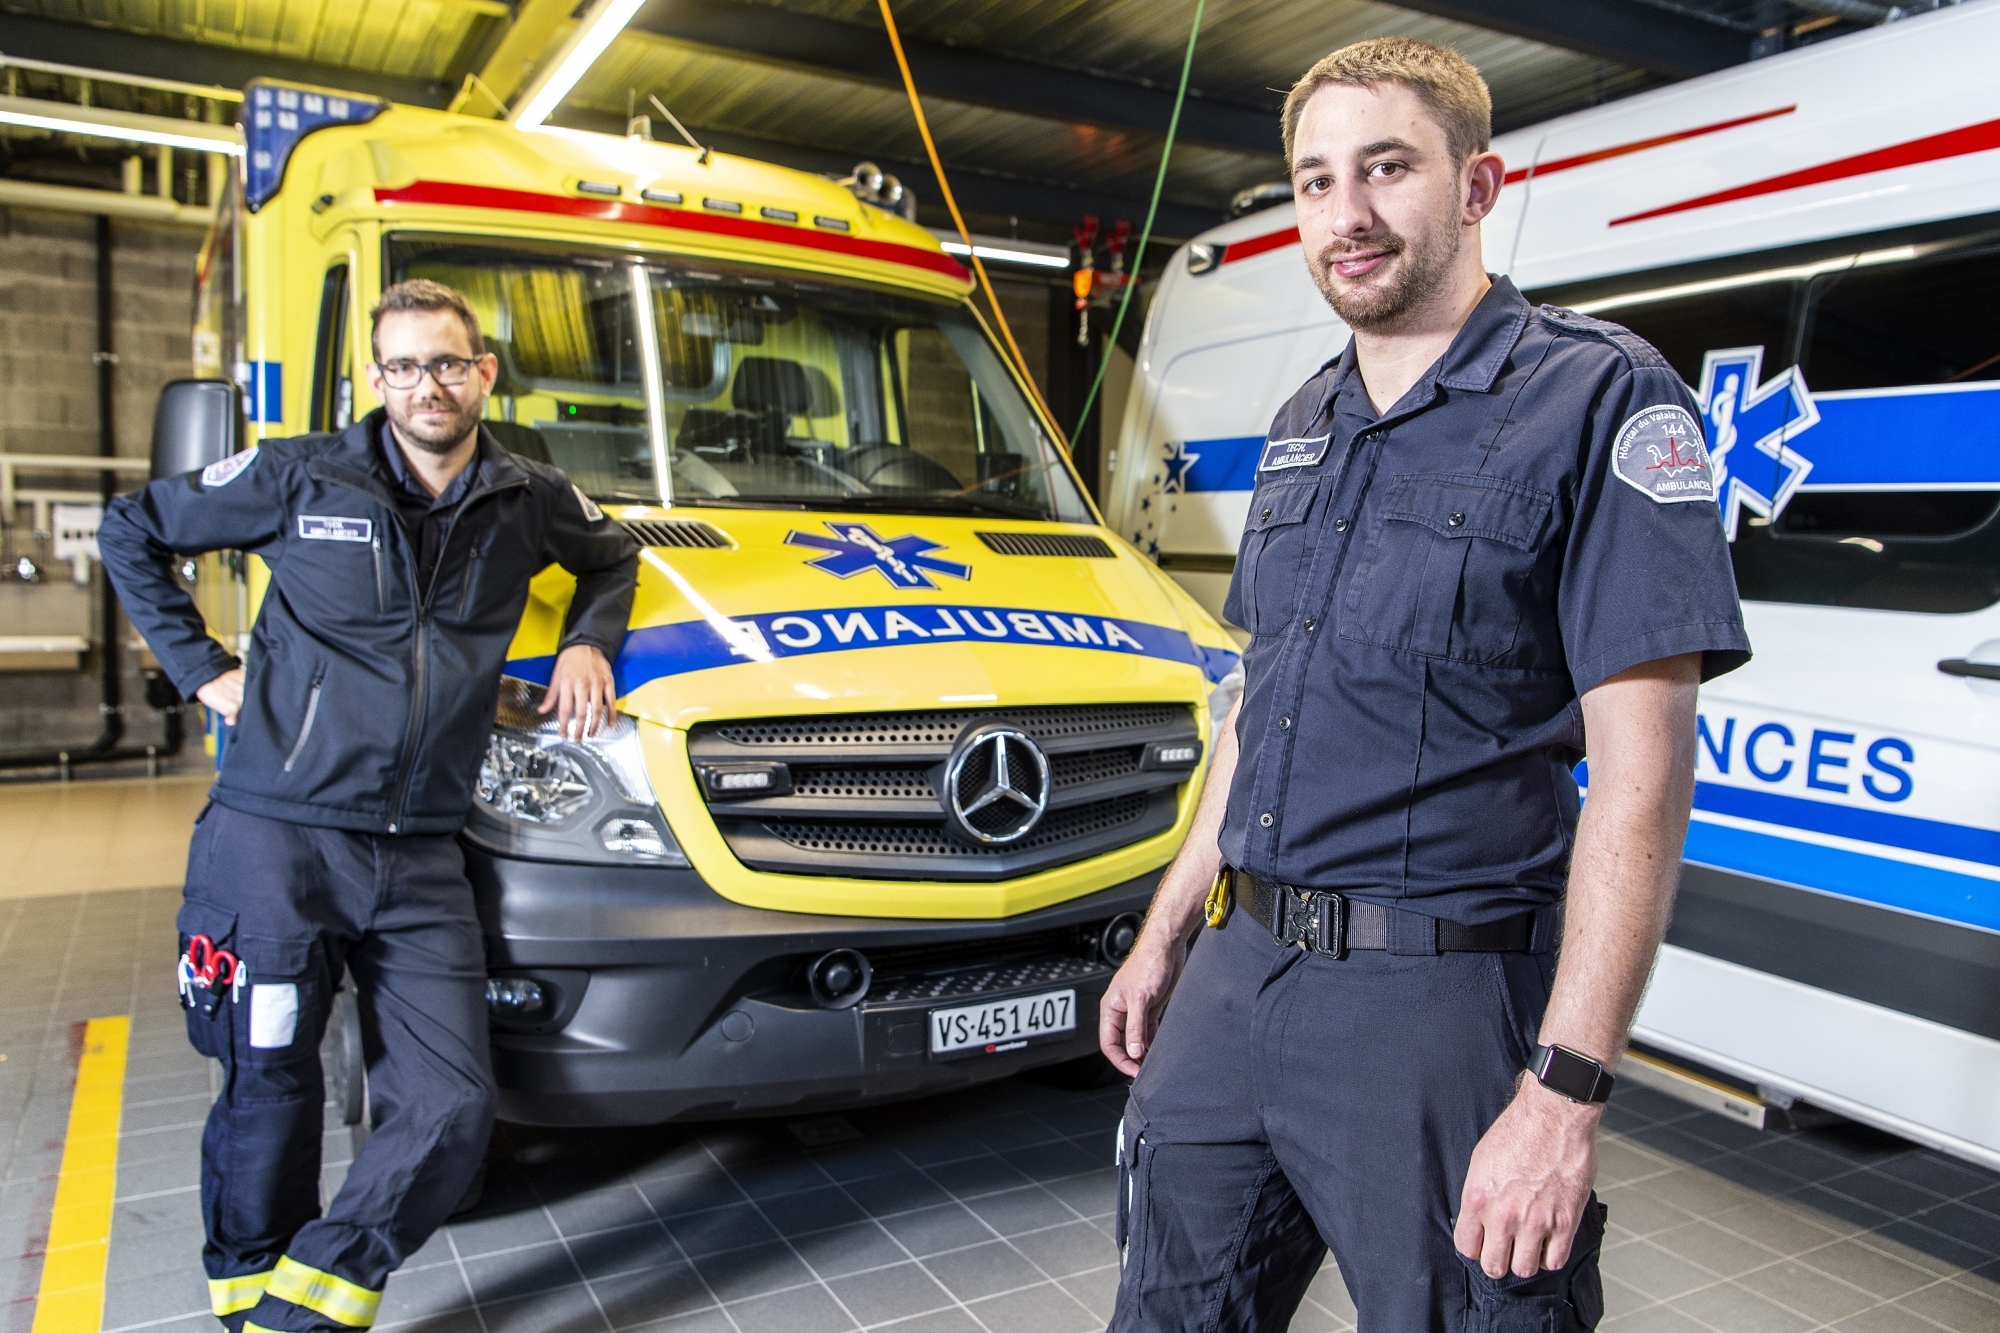 Coup de zoom sur le métier d'ambulancier avec Loïc Schrag (à gauche) et Quentin Angéloz, qui viennent de terminer leur formation au sein de la Compagnie d'ambulances de l'Hôpital du Valais, basée à Martigny.